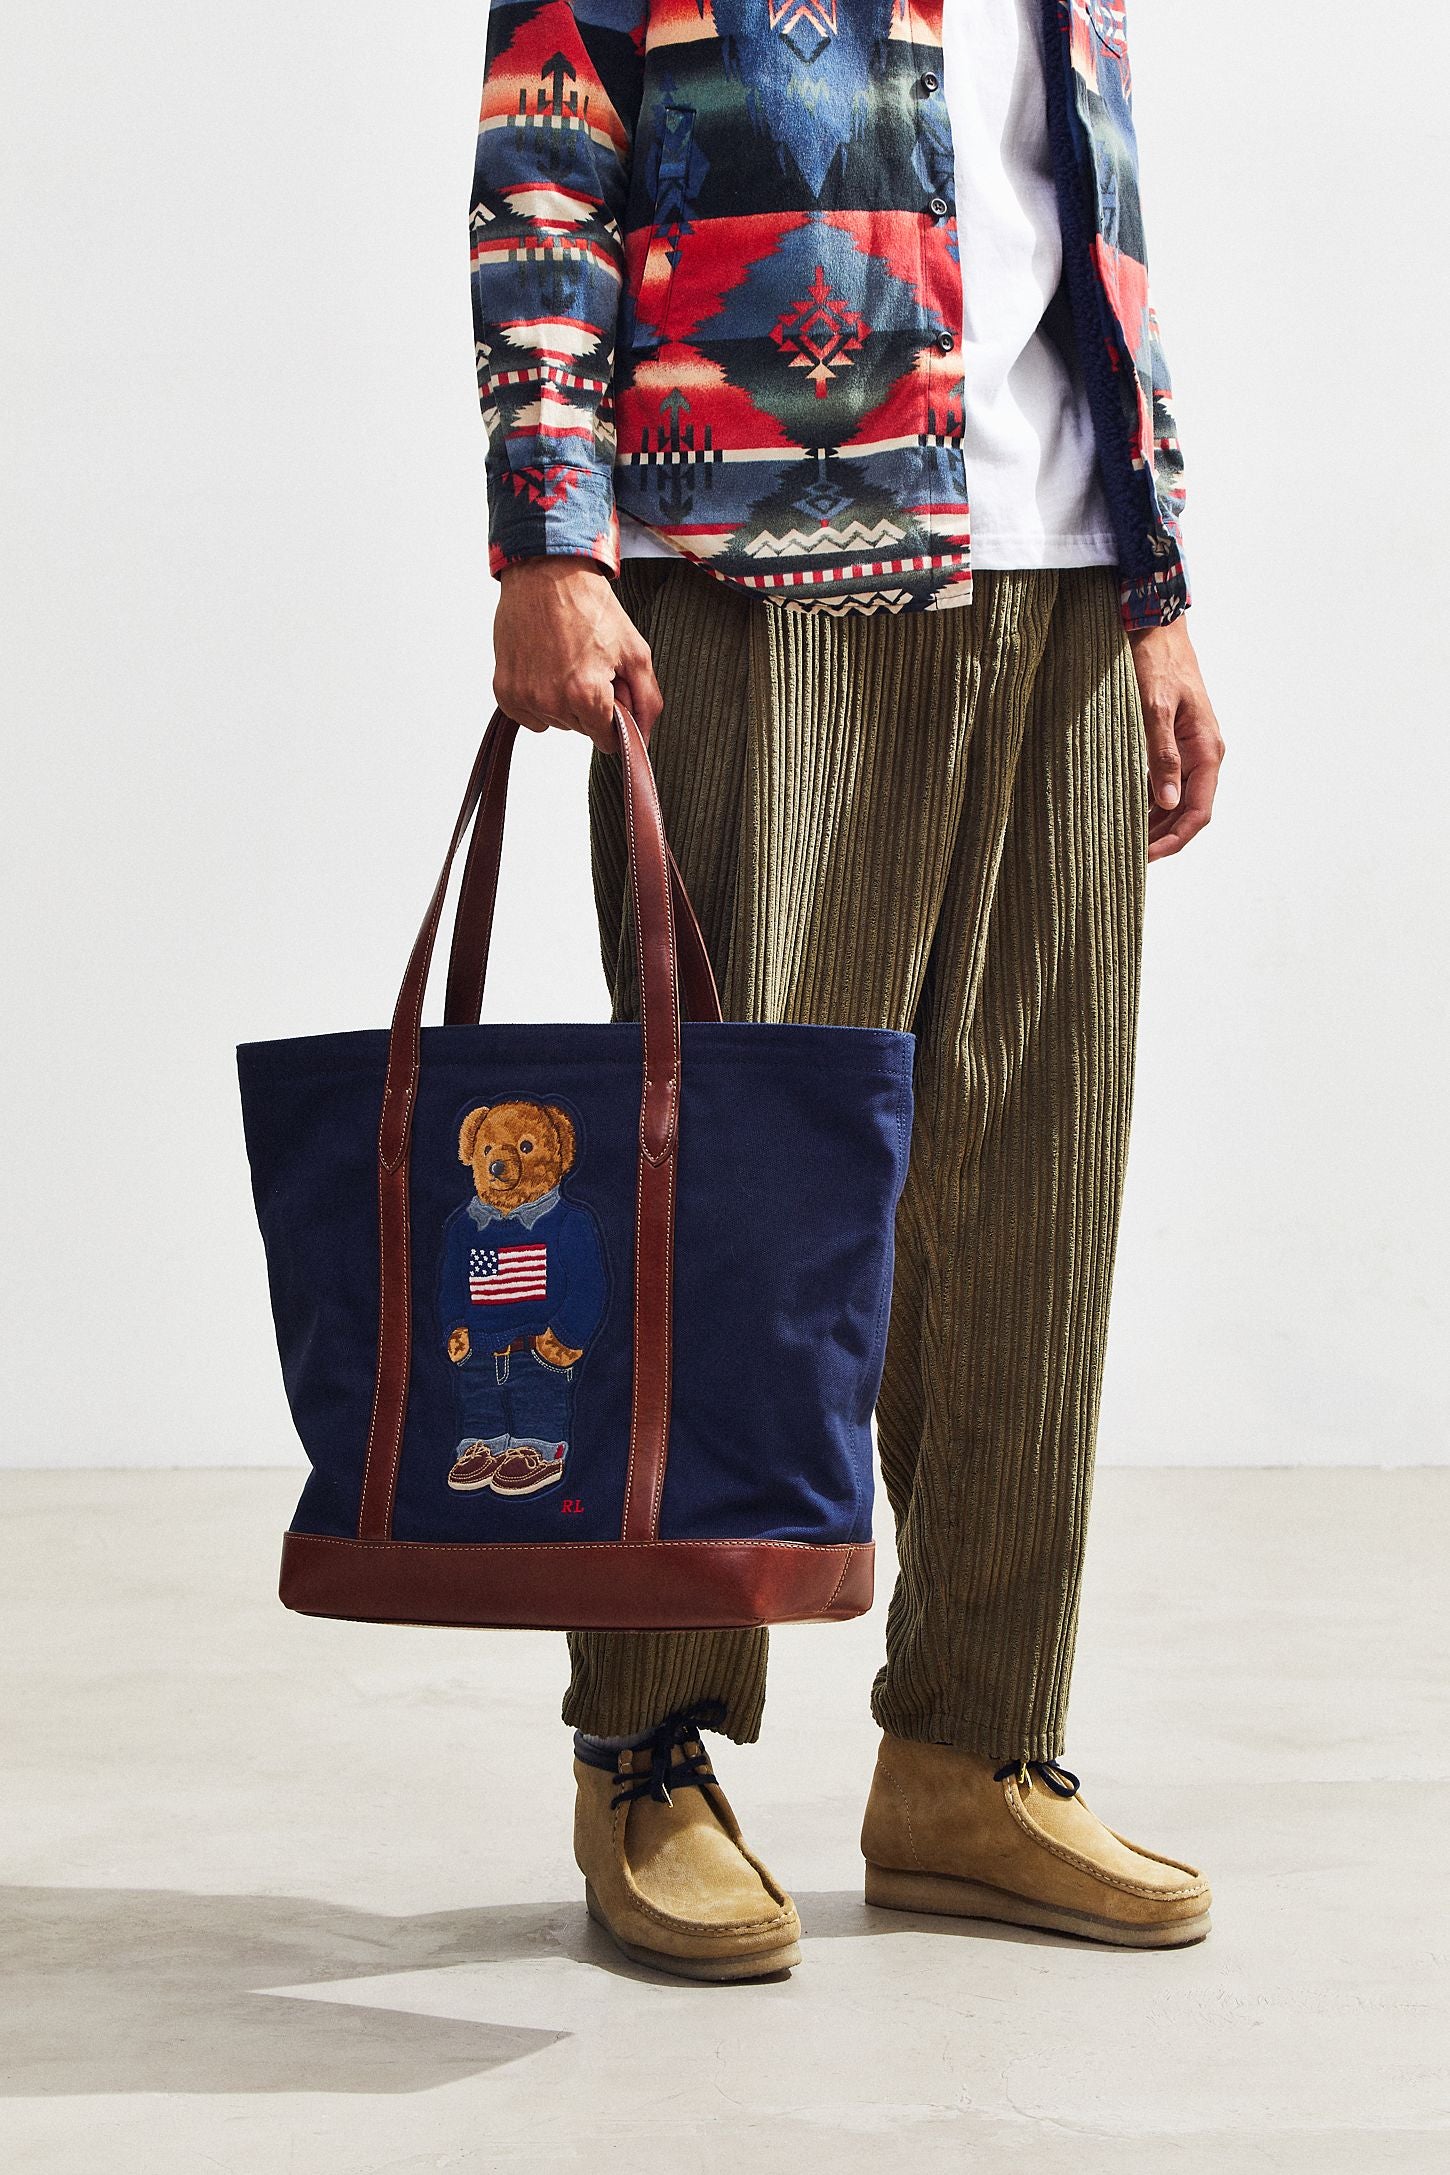 Buy the Ralph Lauren Bag